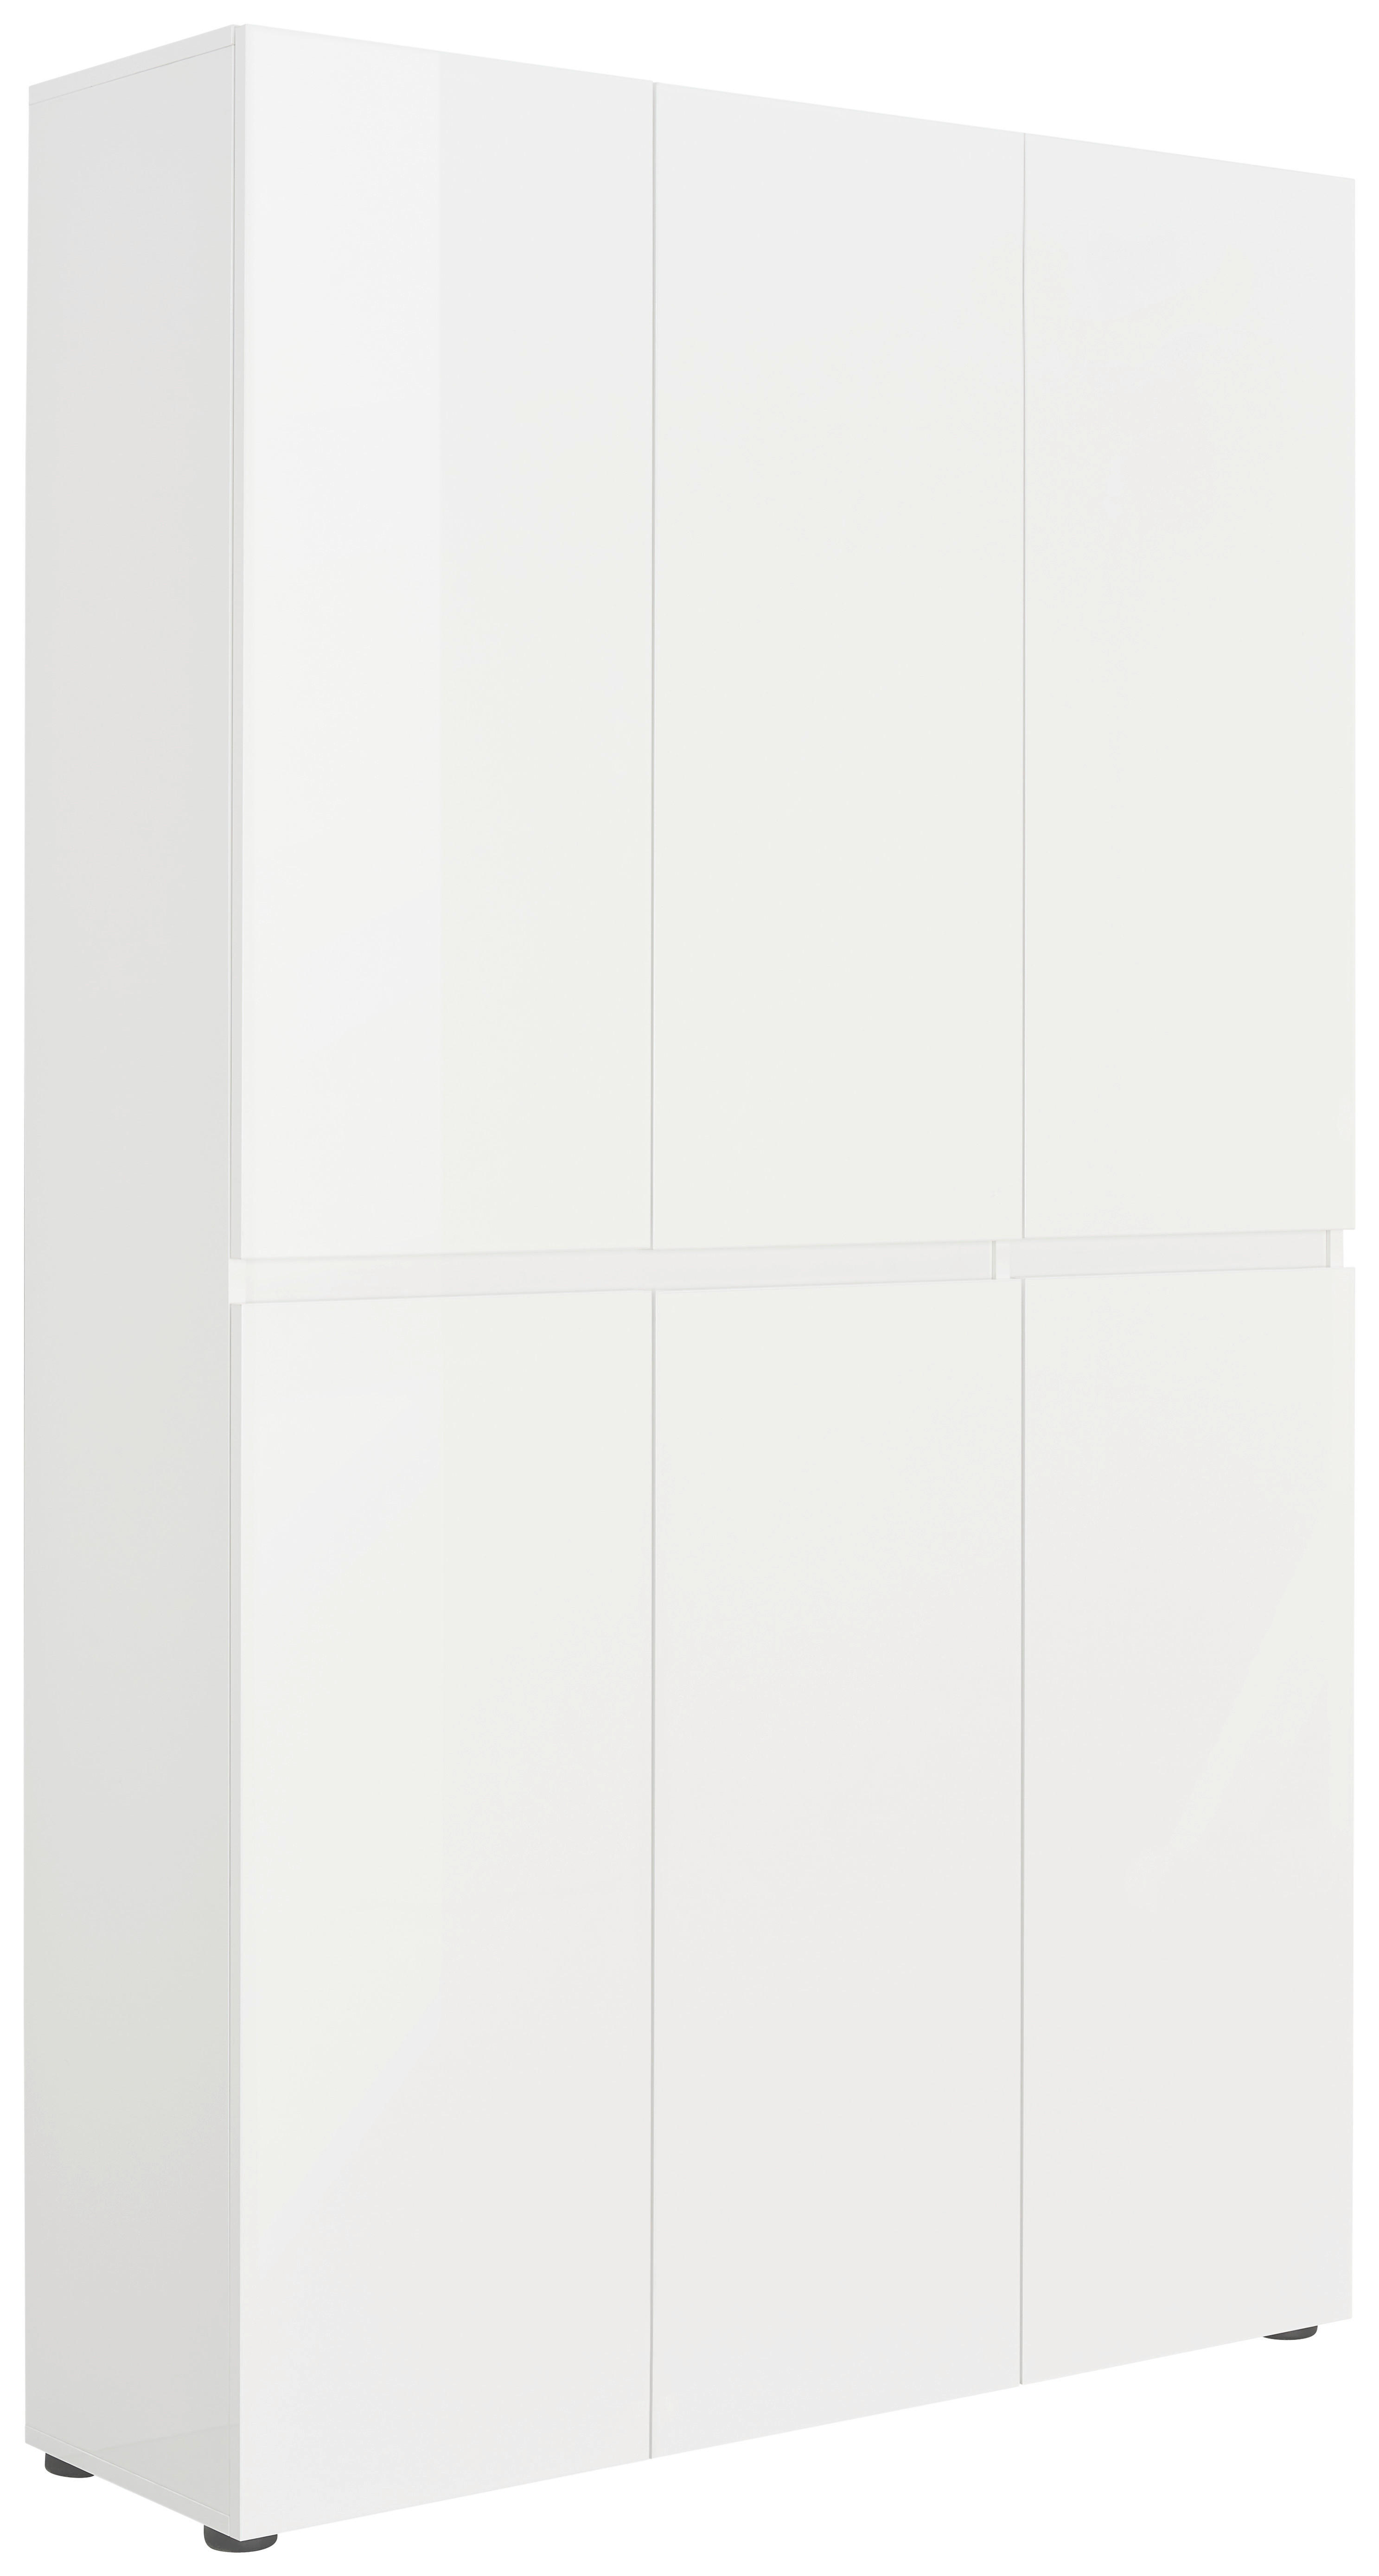 SCHUHSCHRANK 120/200/34 cm  - Weiss/Schwarz, Design, Holzwerkstoff/Kunststoff (120/200/34cm) - Xora